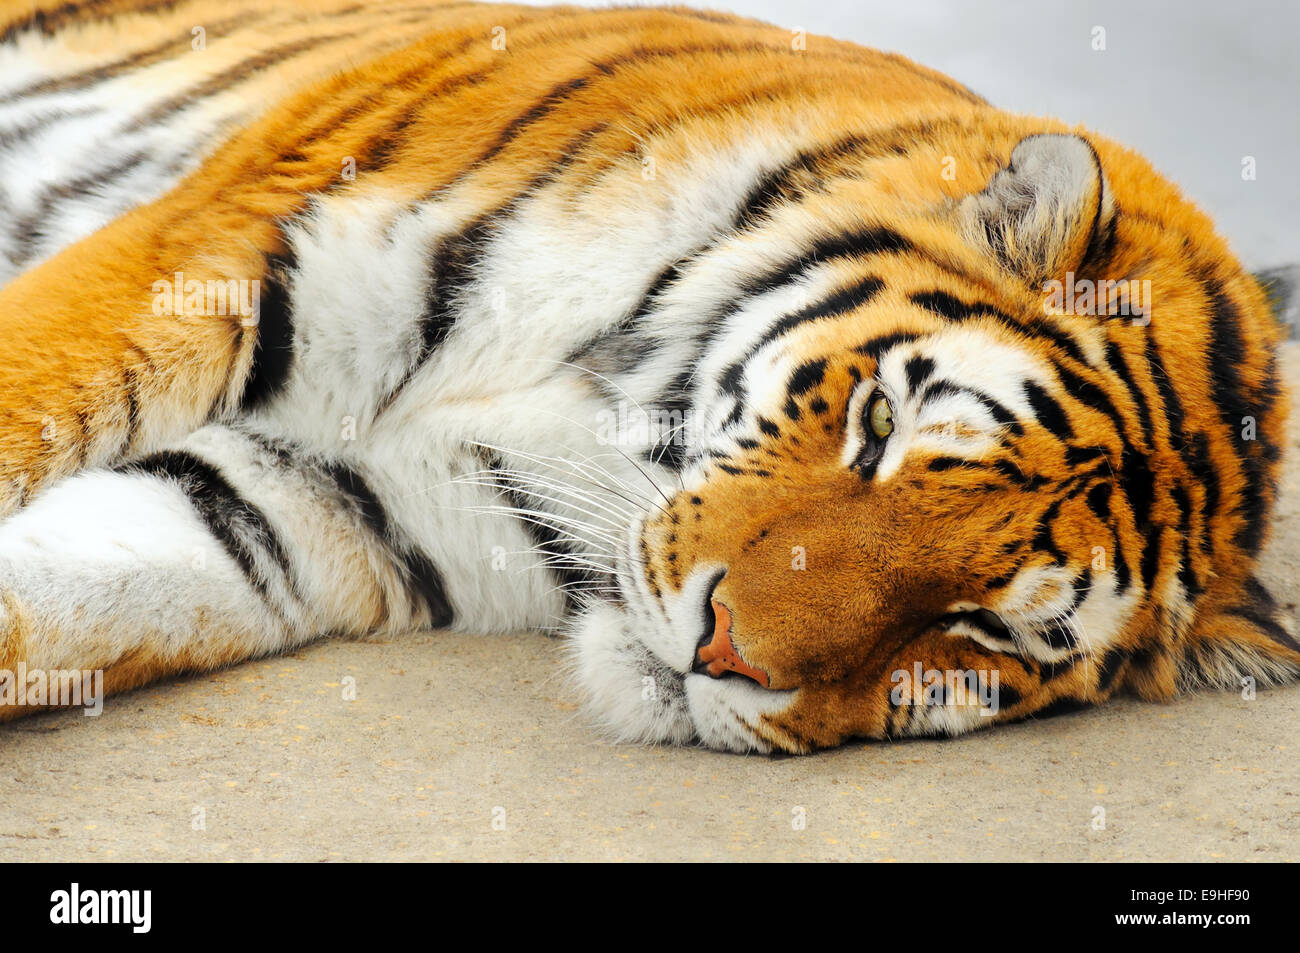 Schön und kräftig riesige Tiger nehmen ein Nickerchen, tolle Details und Farben. Stockfoto